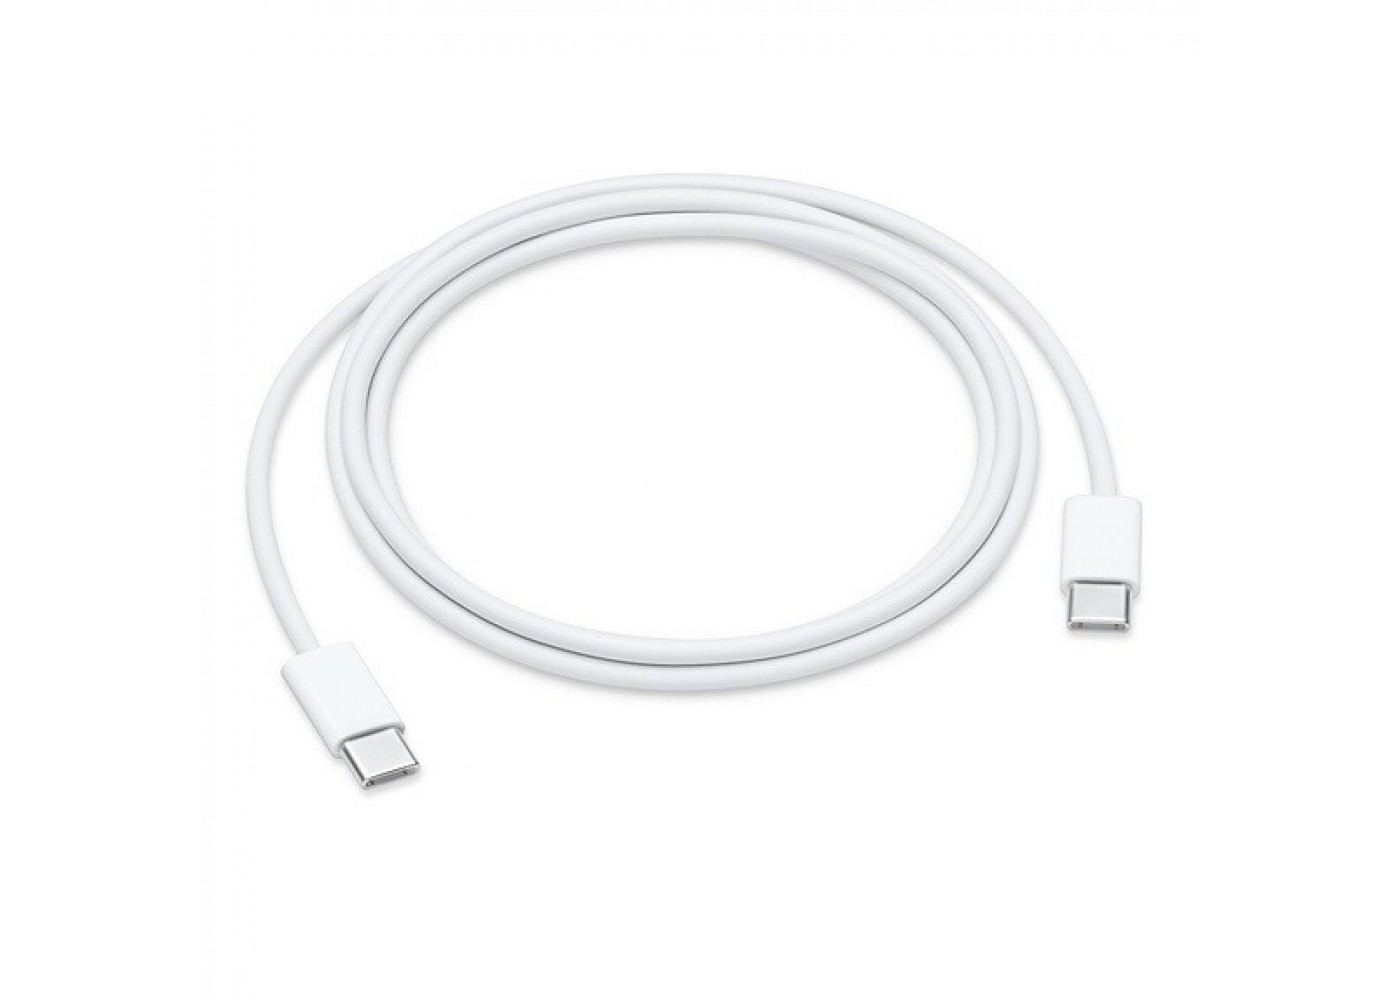 Usb apple iphone. Кабель Apple USB-C mll82zm/a. Кабель USB Type c Lightning Apple. Кабель Apple USB Type-c/Lightning (1 м). Кабель Apple USB-C to Lightning Cable, 1м, белый.